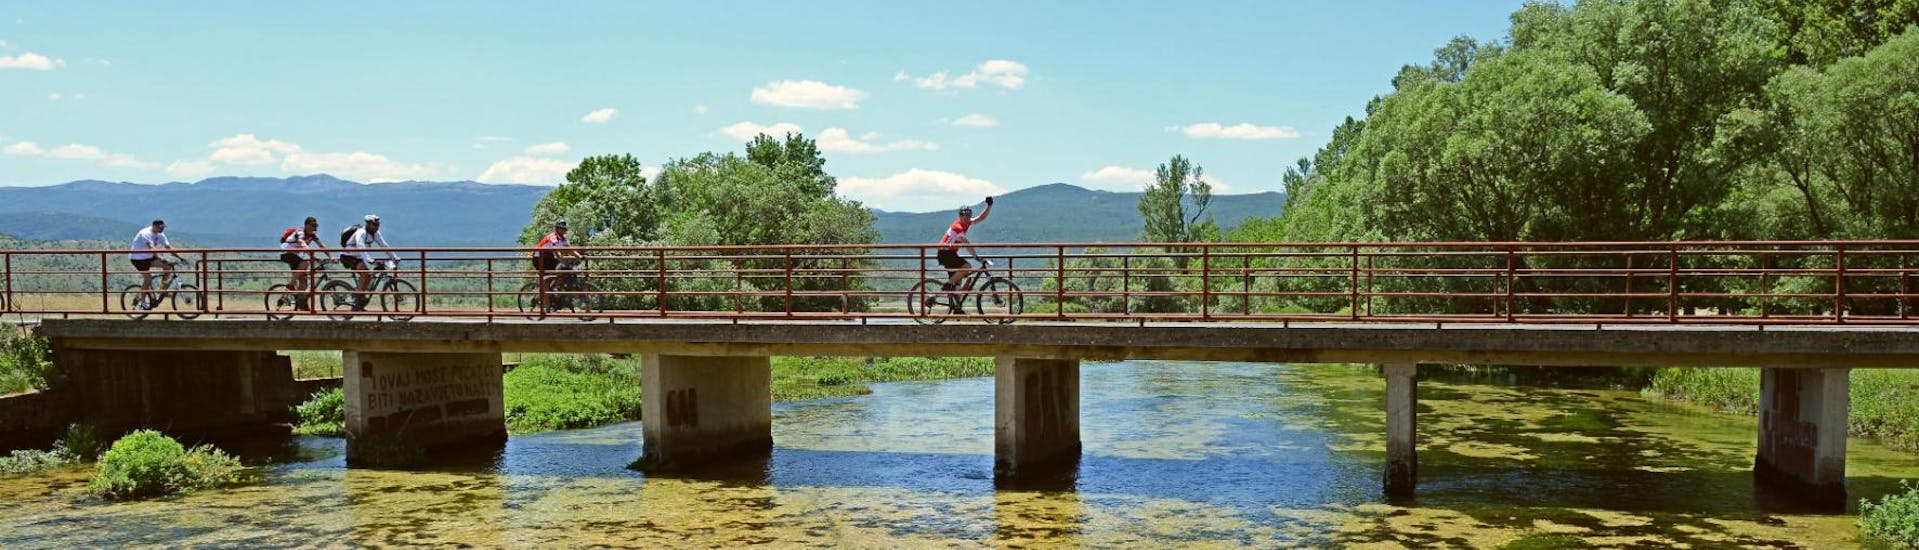 Ruta en BTT en Sinj para ciclistas de nivel intermedio - Cetina.